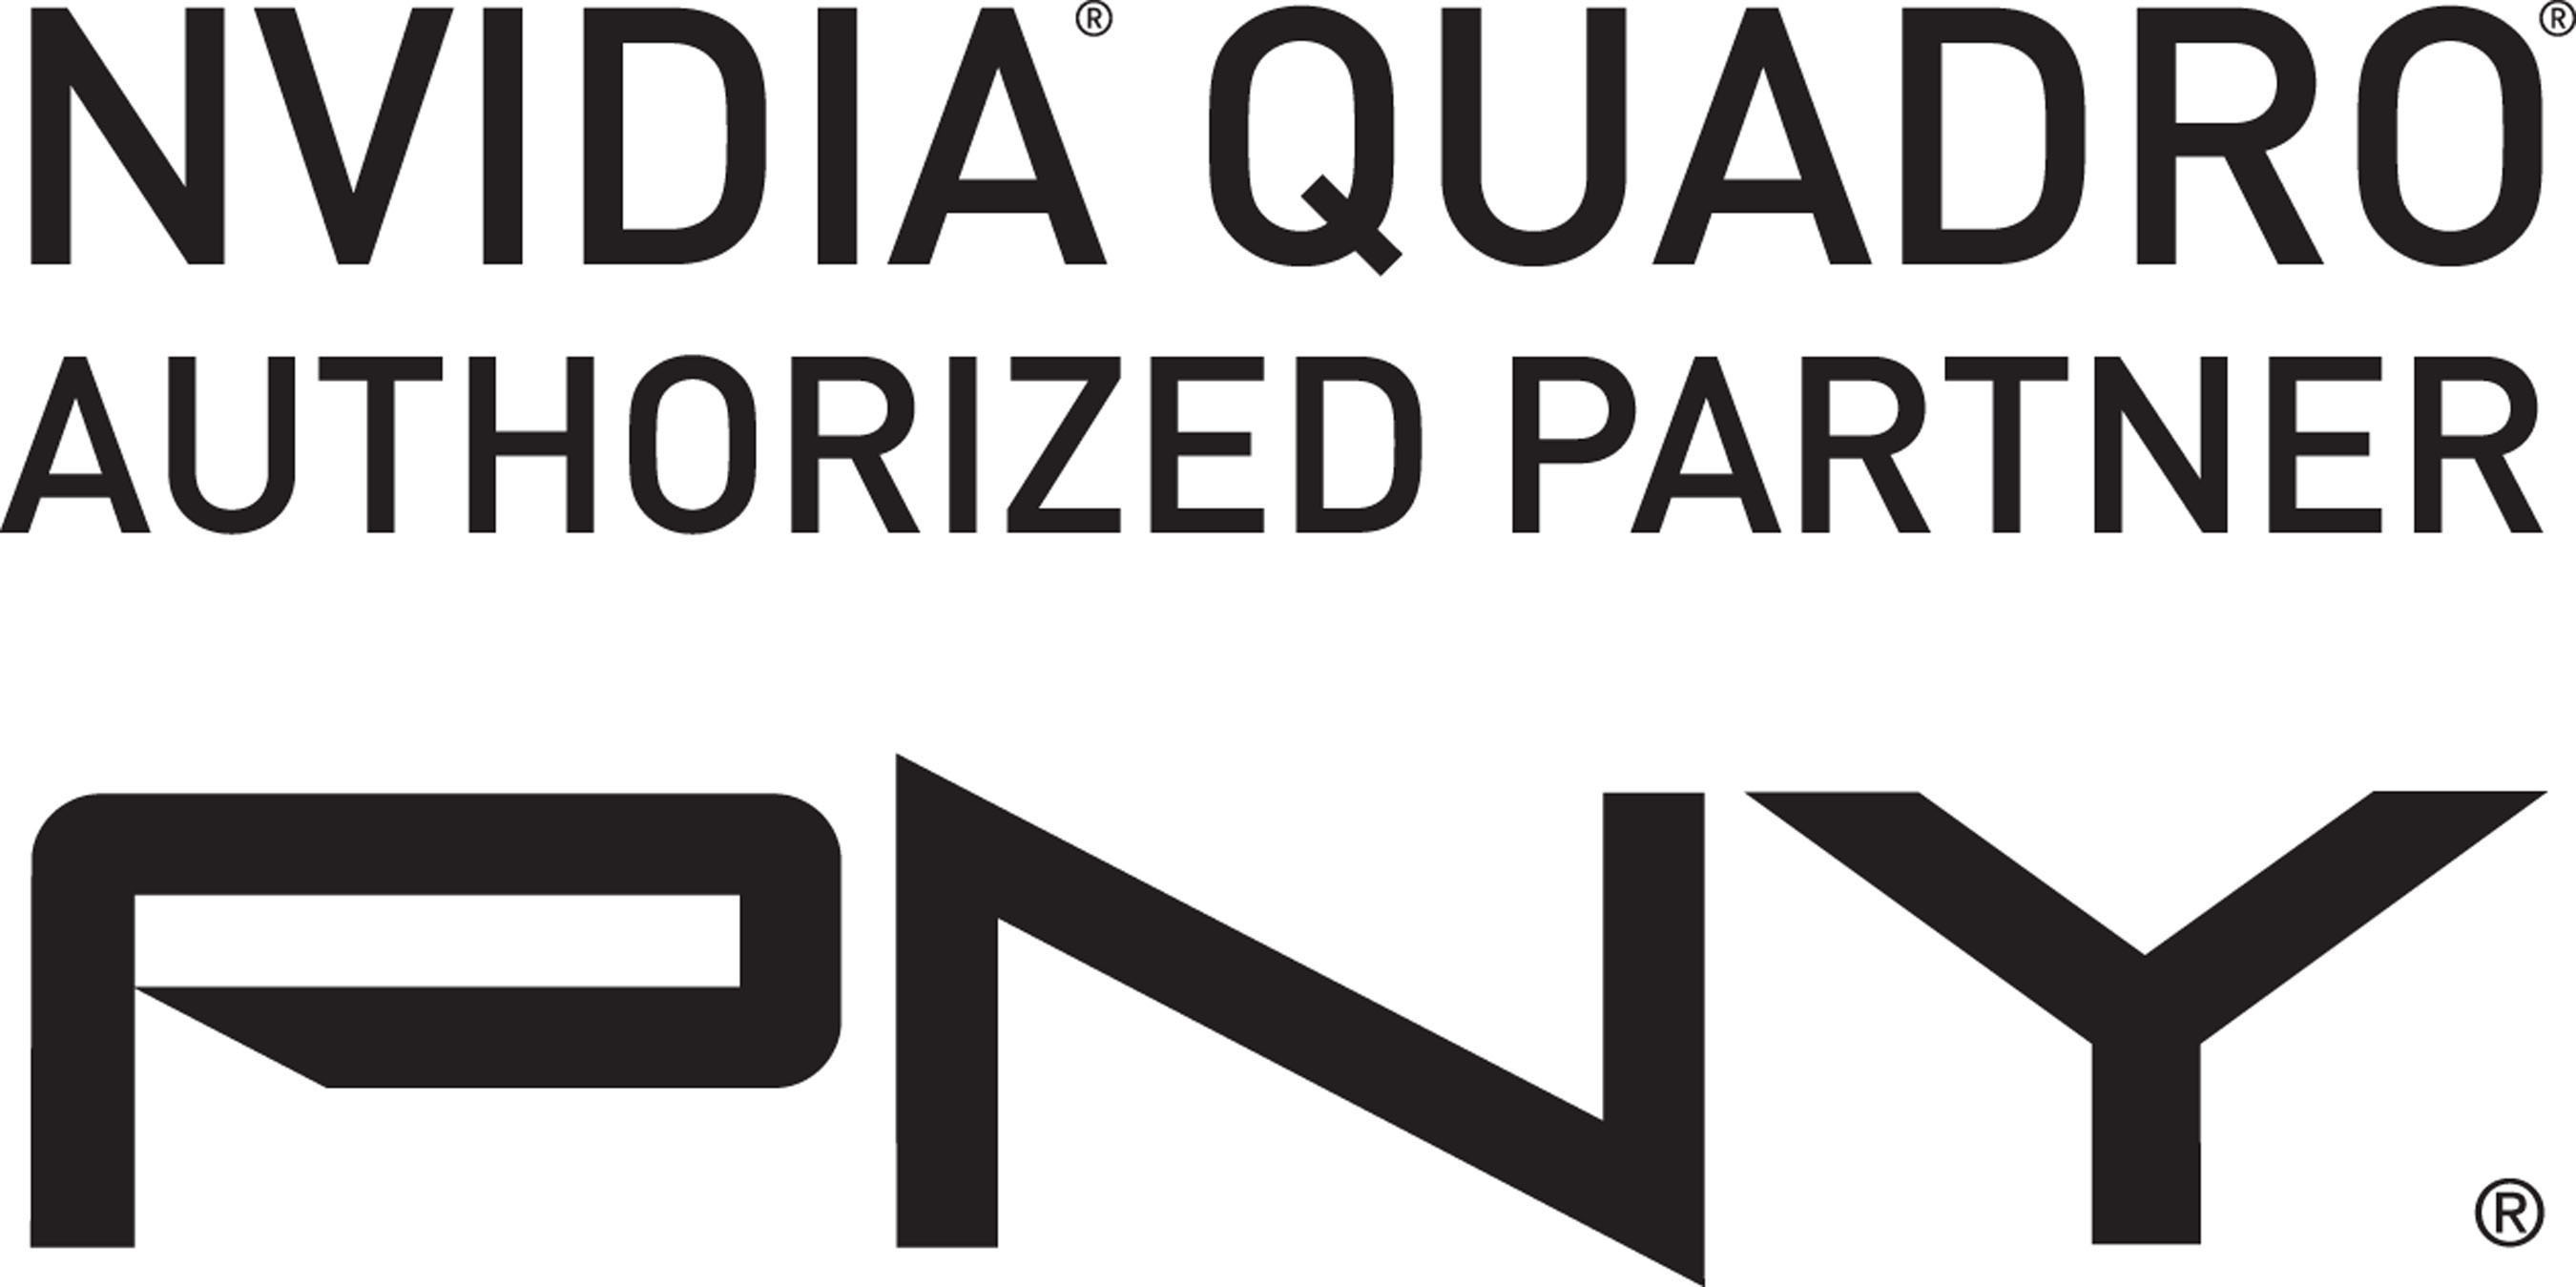 NVIDIA Quadro Authorized Partner PNY Technologies logo. (PRNewsFoto/PNY Technologies, Inc.) (PRNewsFoto/PNY TECHNOLOGIES, INC.)